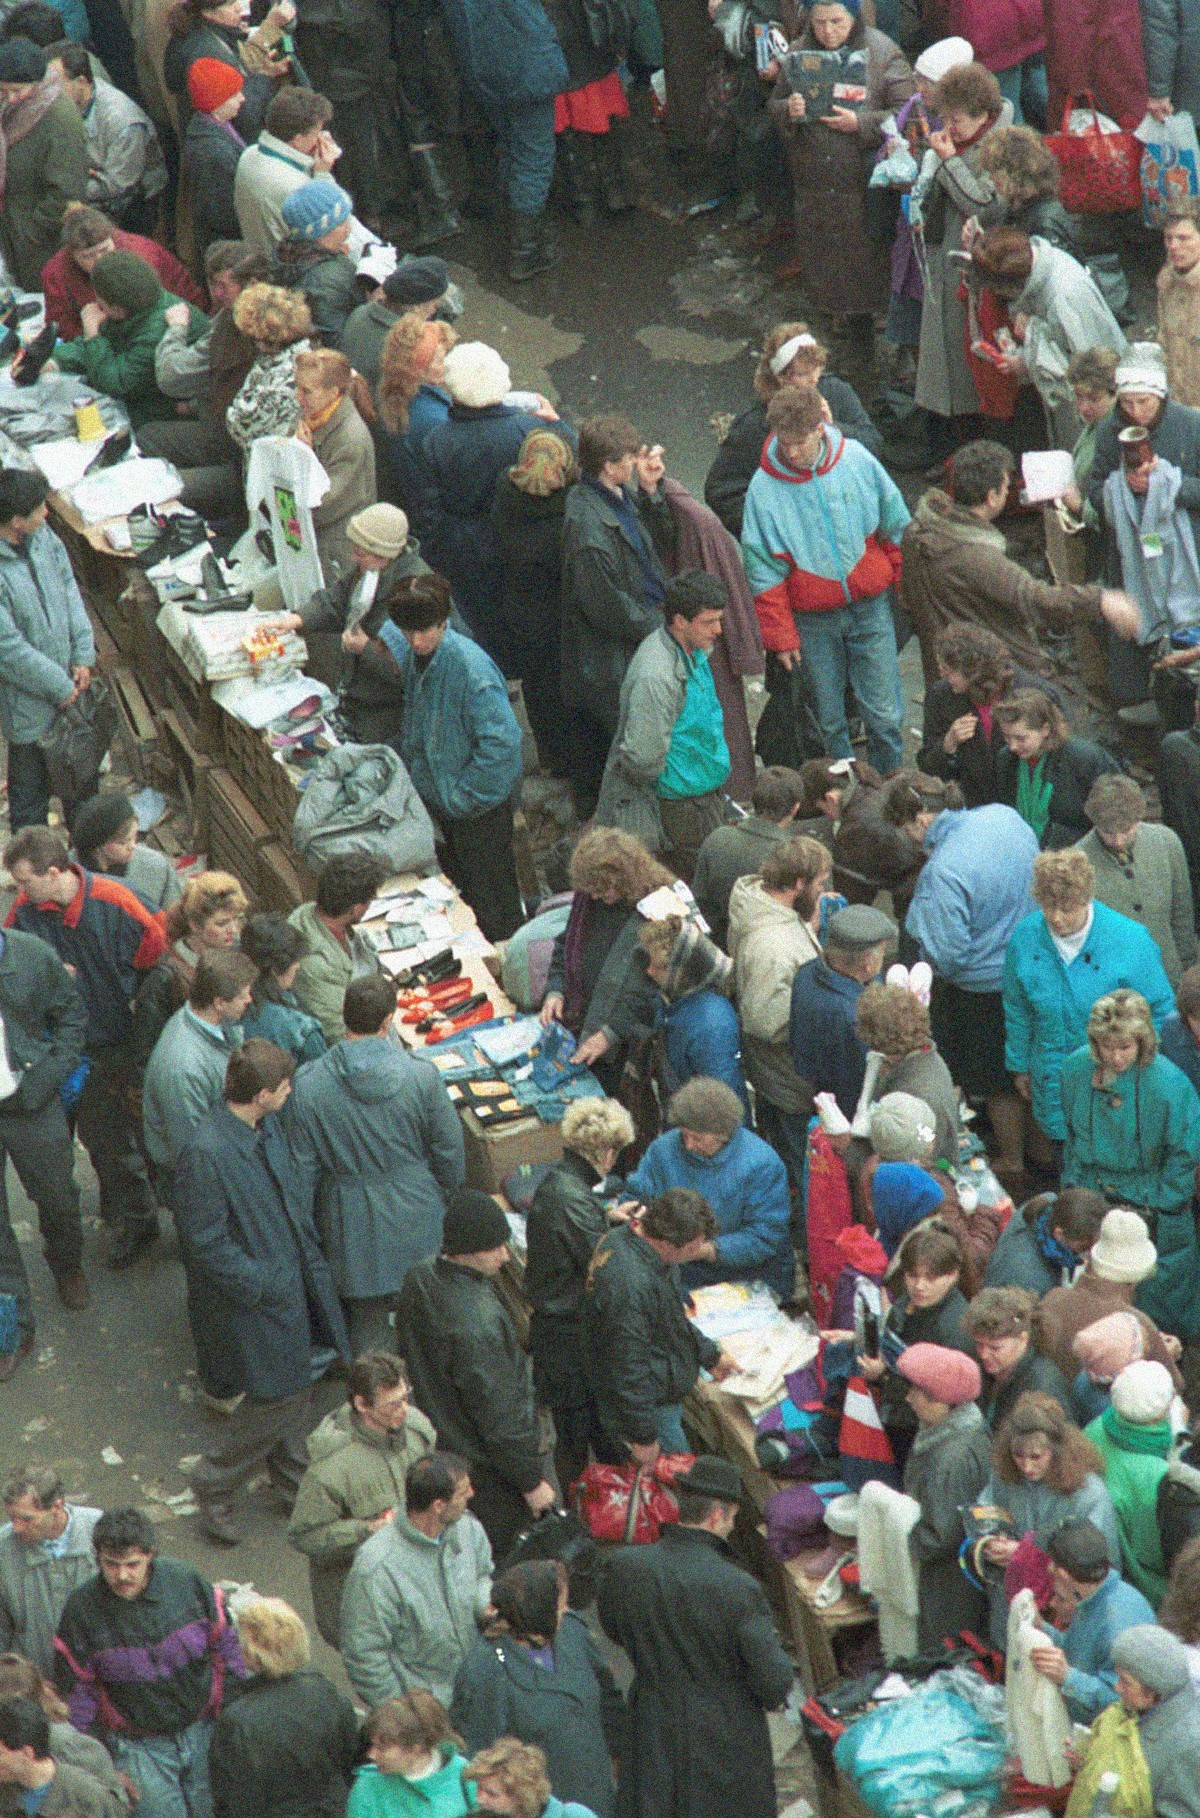 Prodajalci na ulici blizu osrednje otroške veleblagovnice Detskij mir v Moskvi

